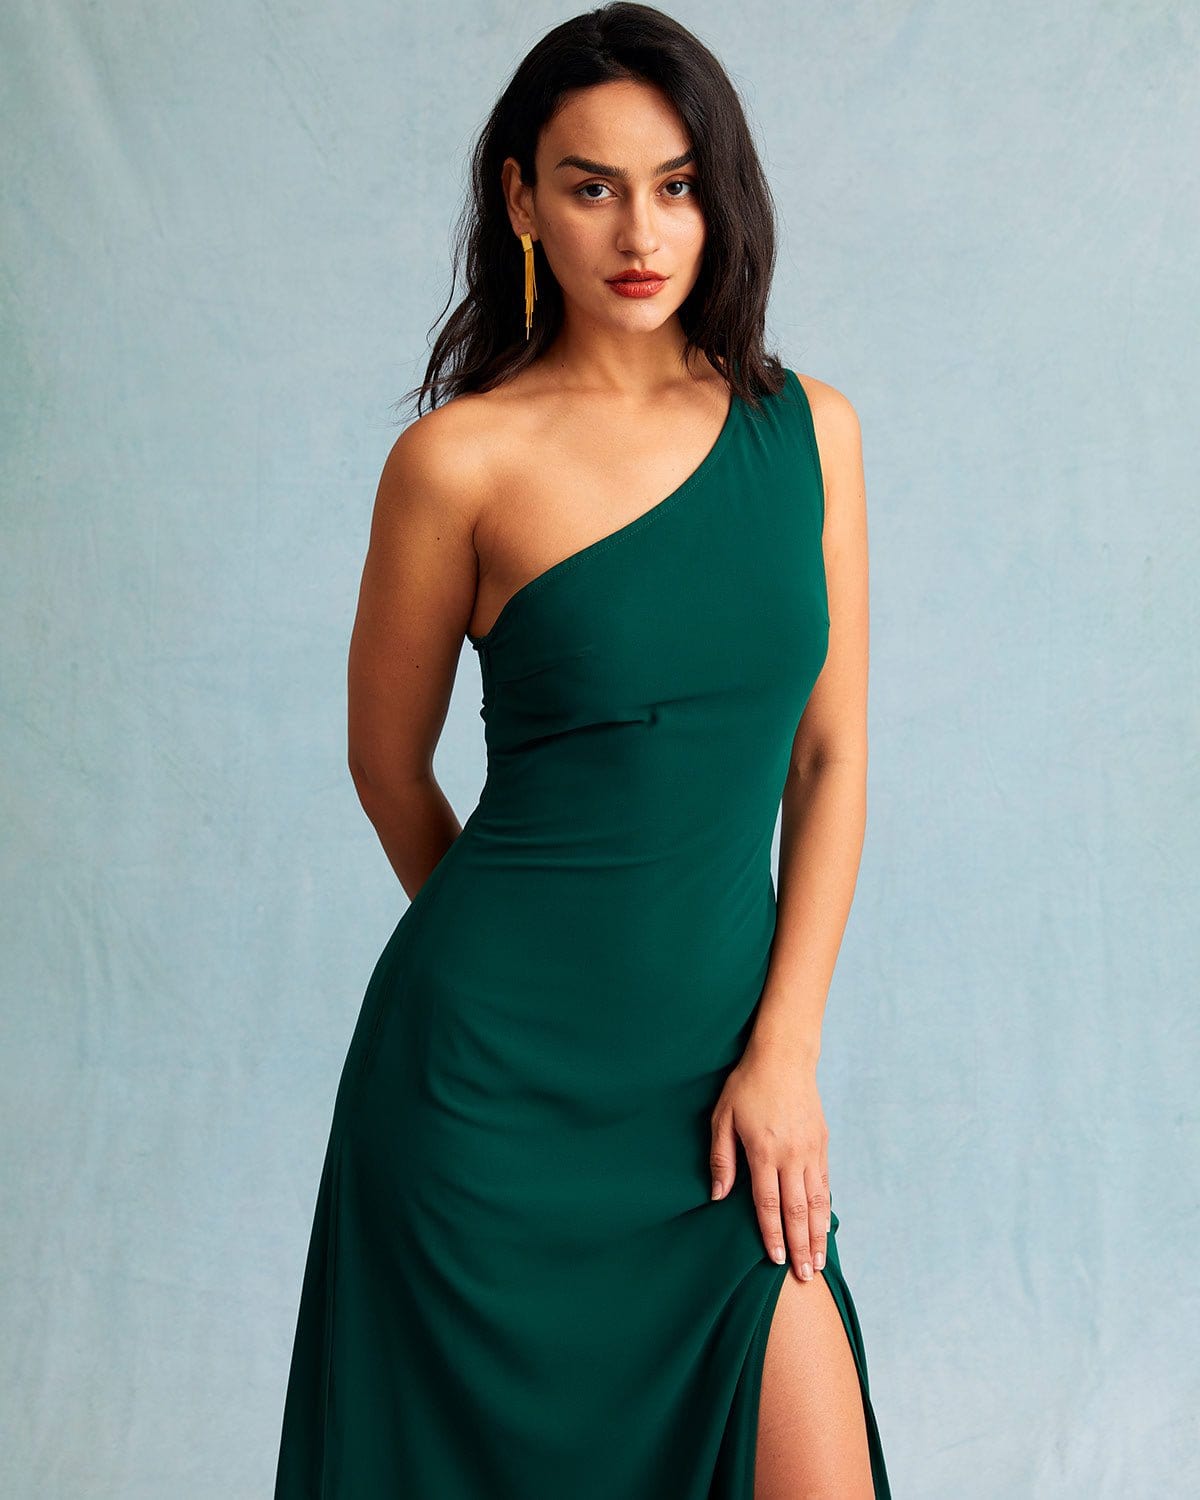 Green One Shoulder Sleeveless Maxi Dress - Women's Casual Sleeveless Maxi  Dress, Elegant Green - Black - Dresses